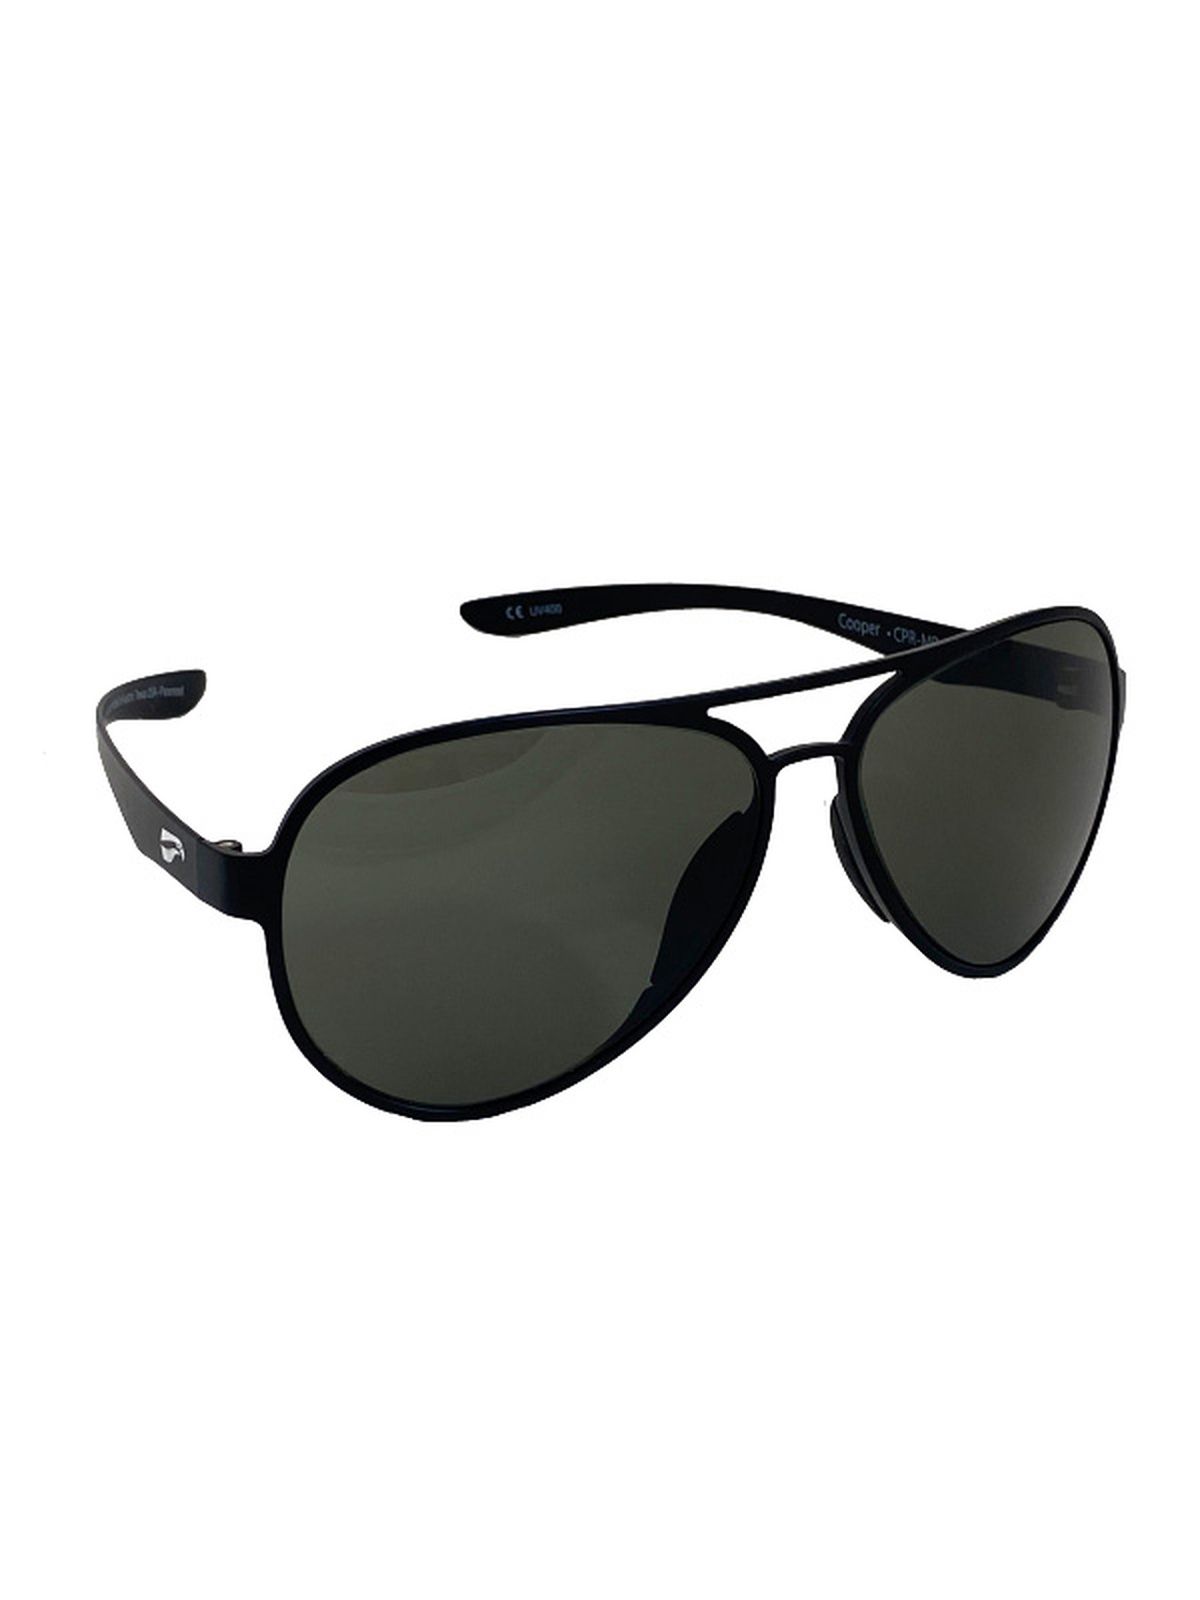 Flying Eyes Sonnenbrille Cooper Aviator - Rahmen matt schwarz, Linsen G15 (neutrales Grün)